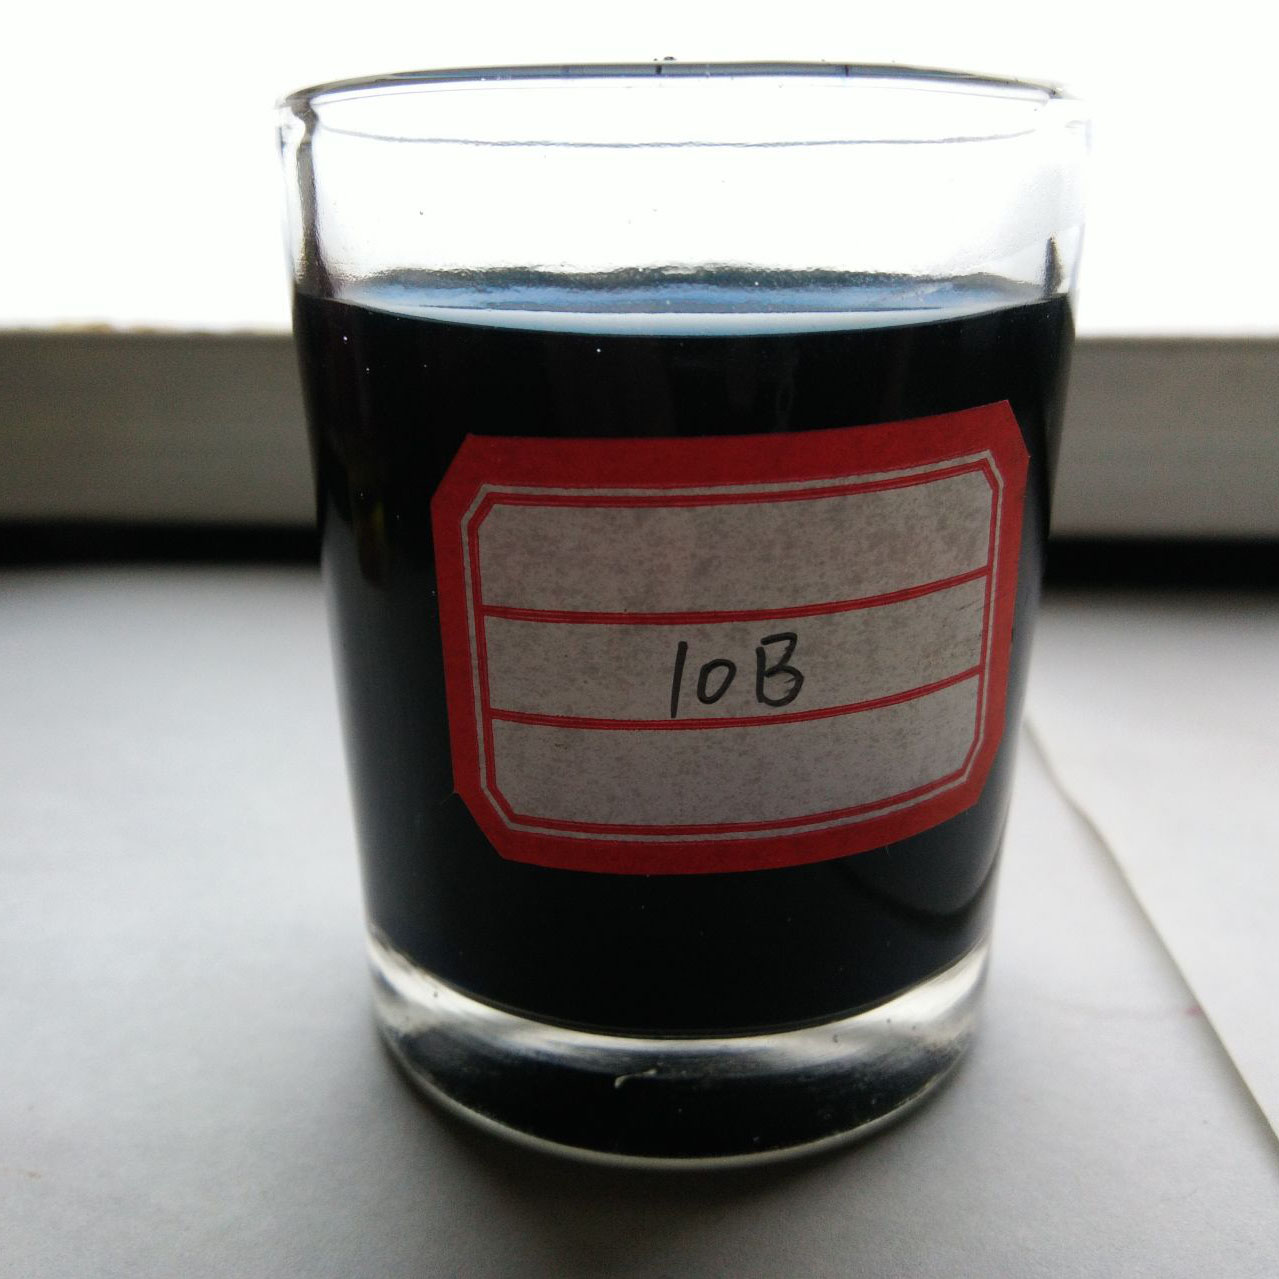 Geriausias kainos ir kokybės santykis Acid Black ATT 100% Black pudra, naudojama ant šilko